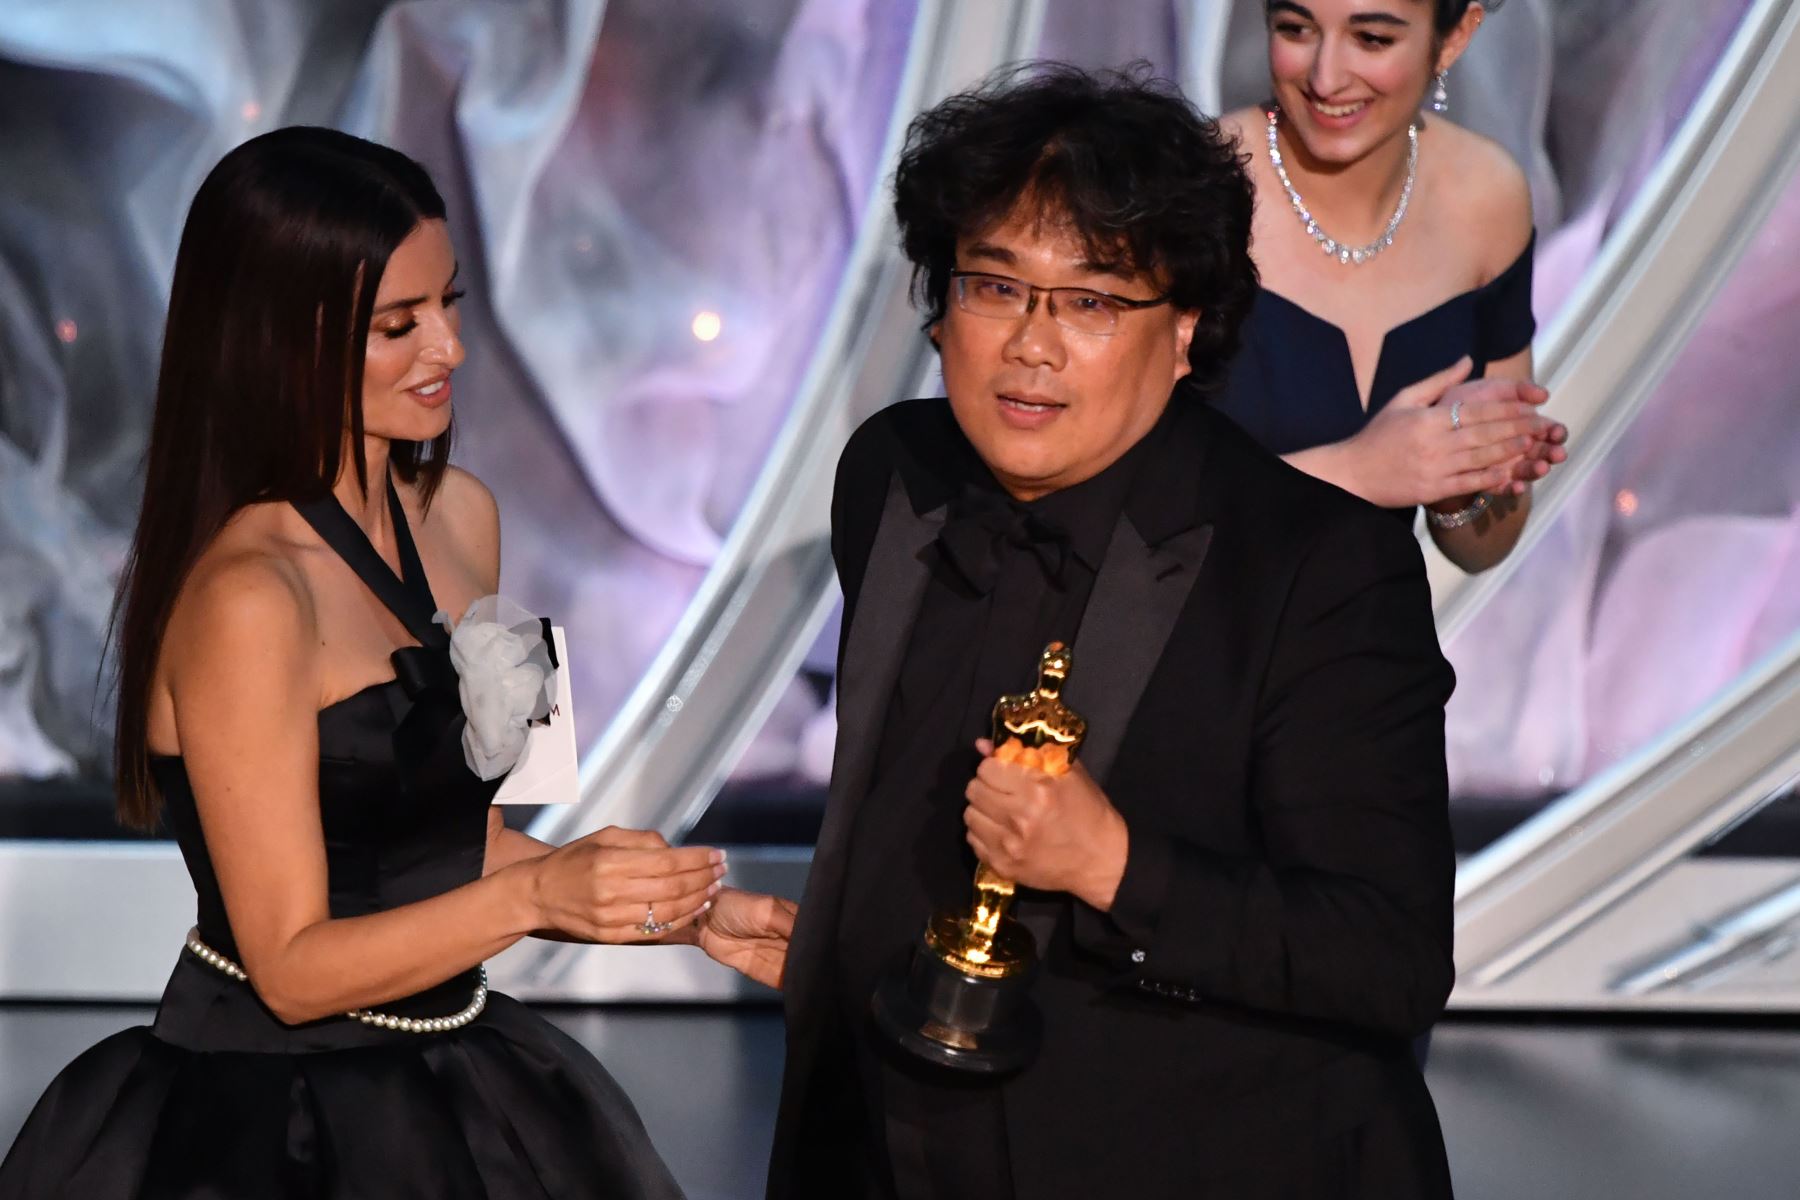 El director surcoreano Bong Joon-ho acepta el premio al mejor largometraje internacional por "Parasite" durante los 92o Oscars en el Dolby Theatre de Hollywood, California.
Foto: AFP